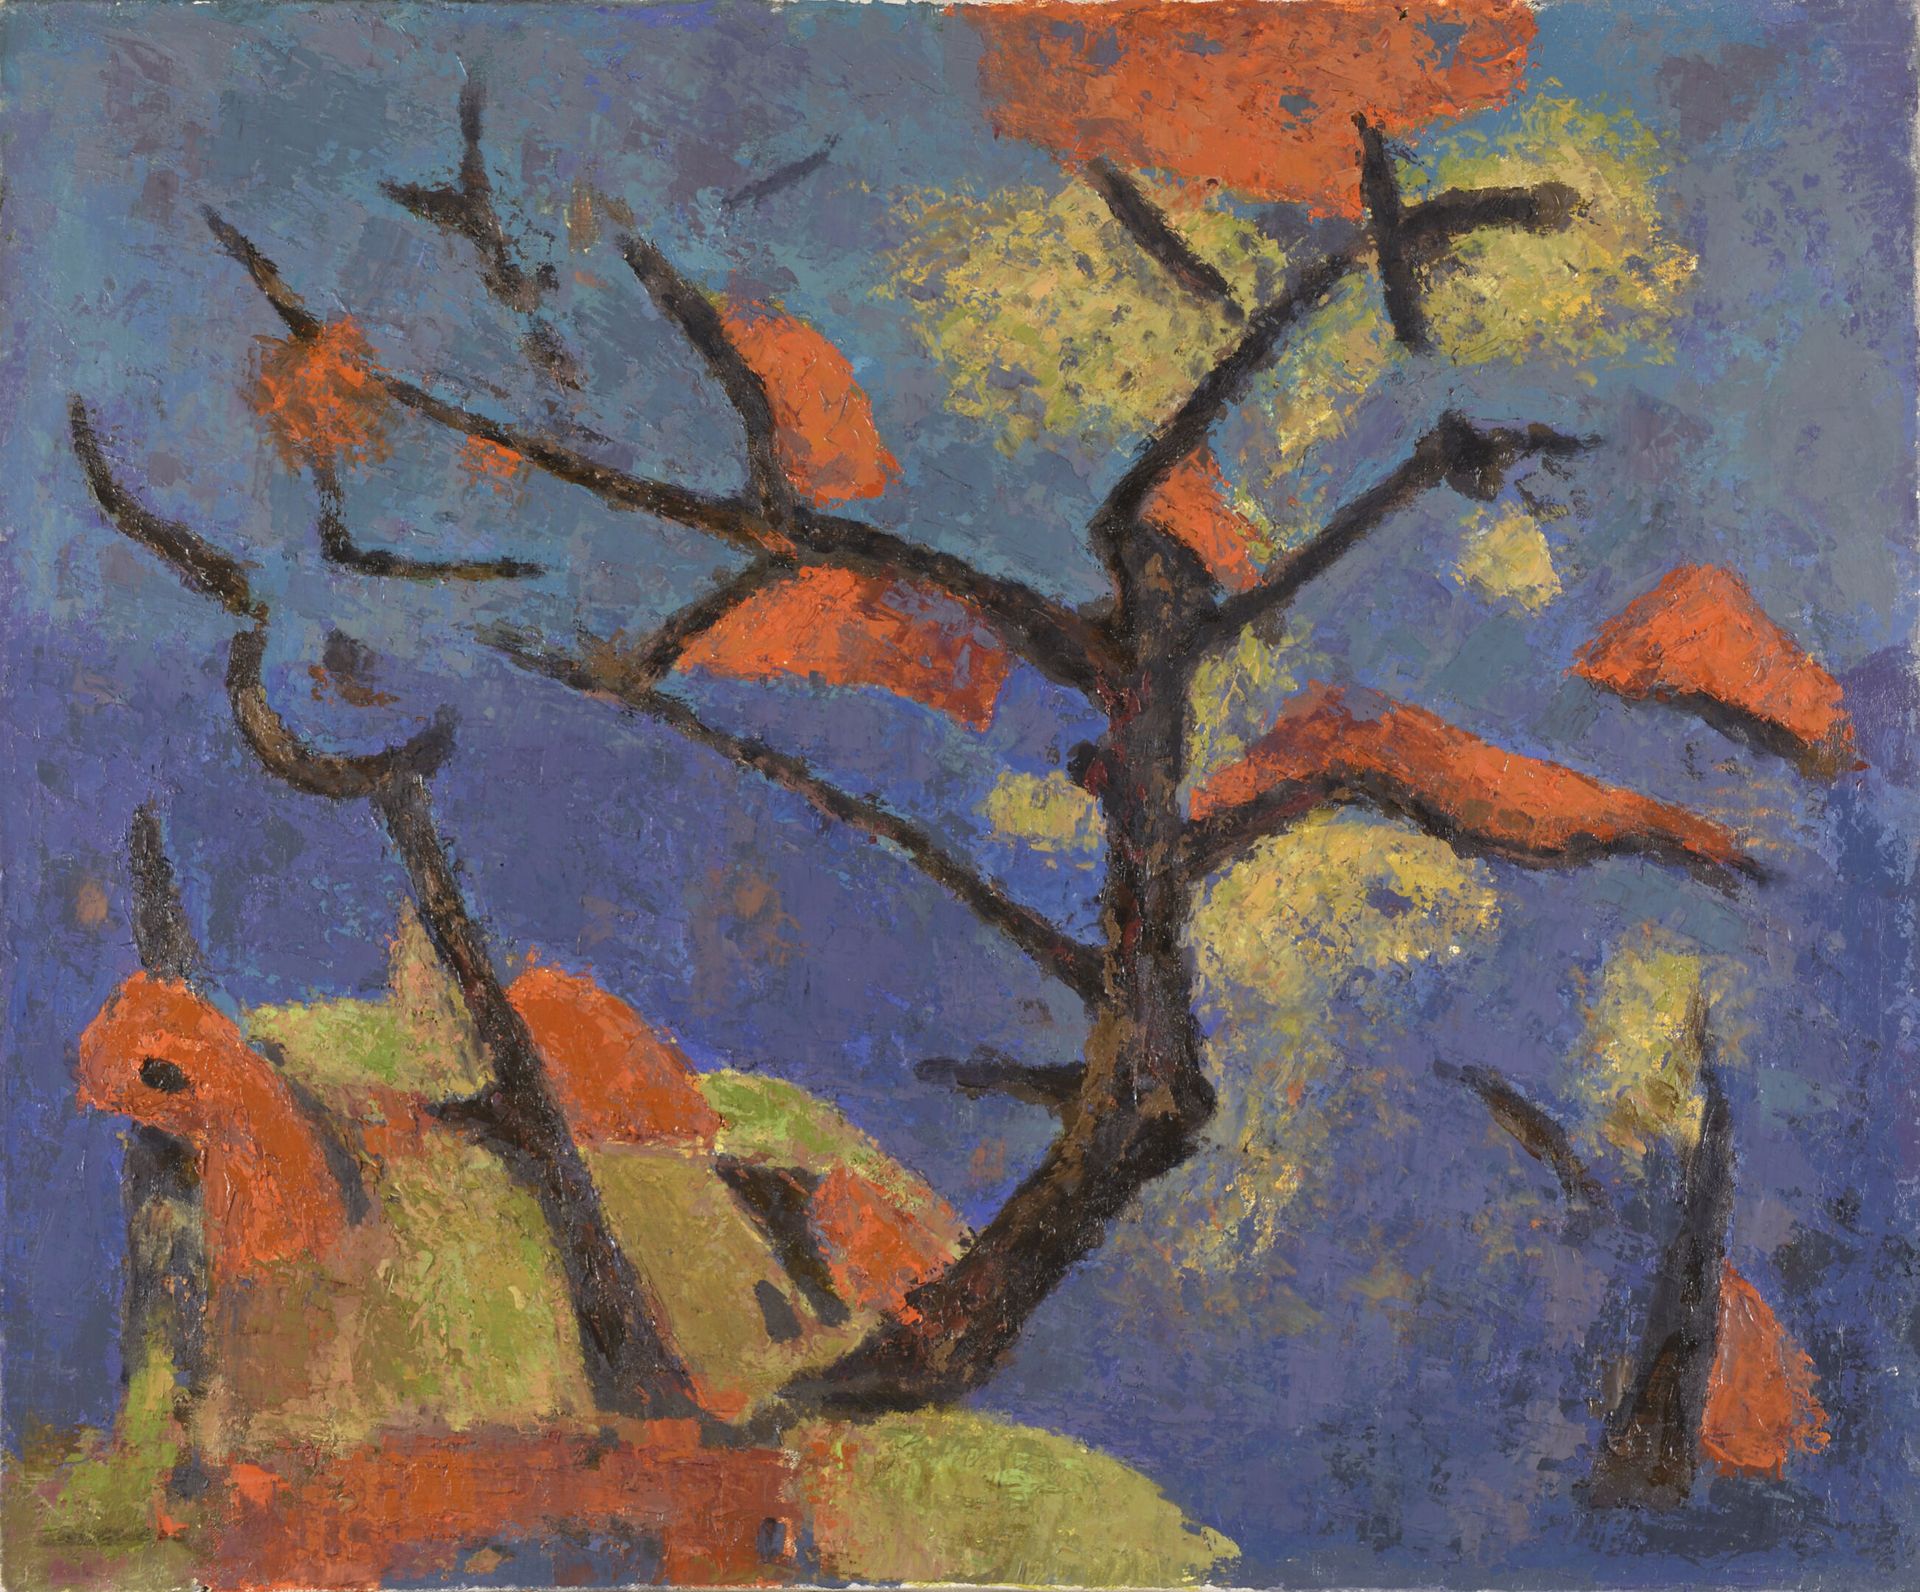 Null 丹尼尔-格洛里亚(1909-1989)

彩色的树

布面油画，左下方有艺术家的印章

H.54厘米 - 宽65厘米